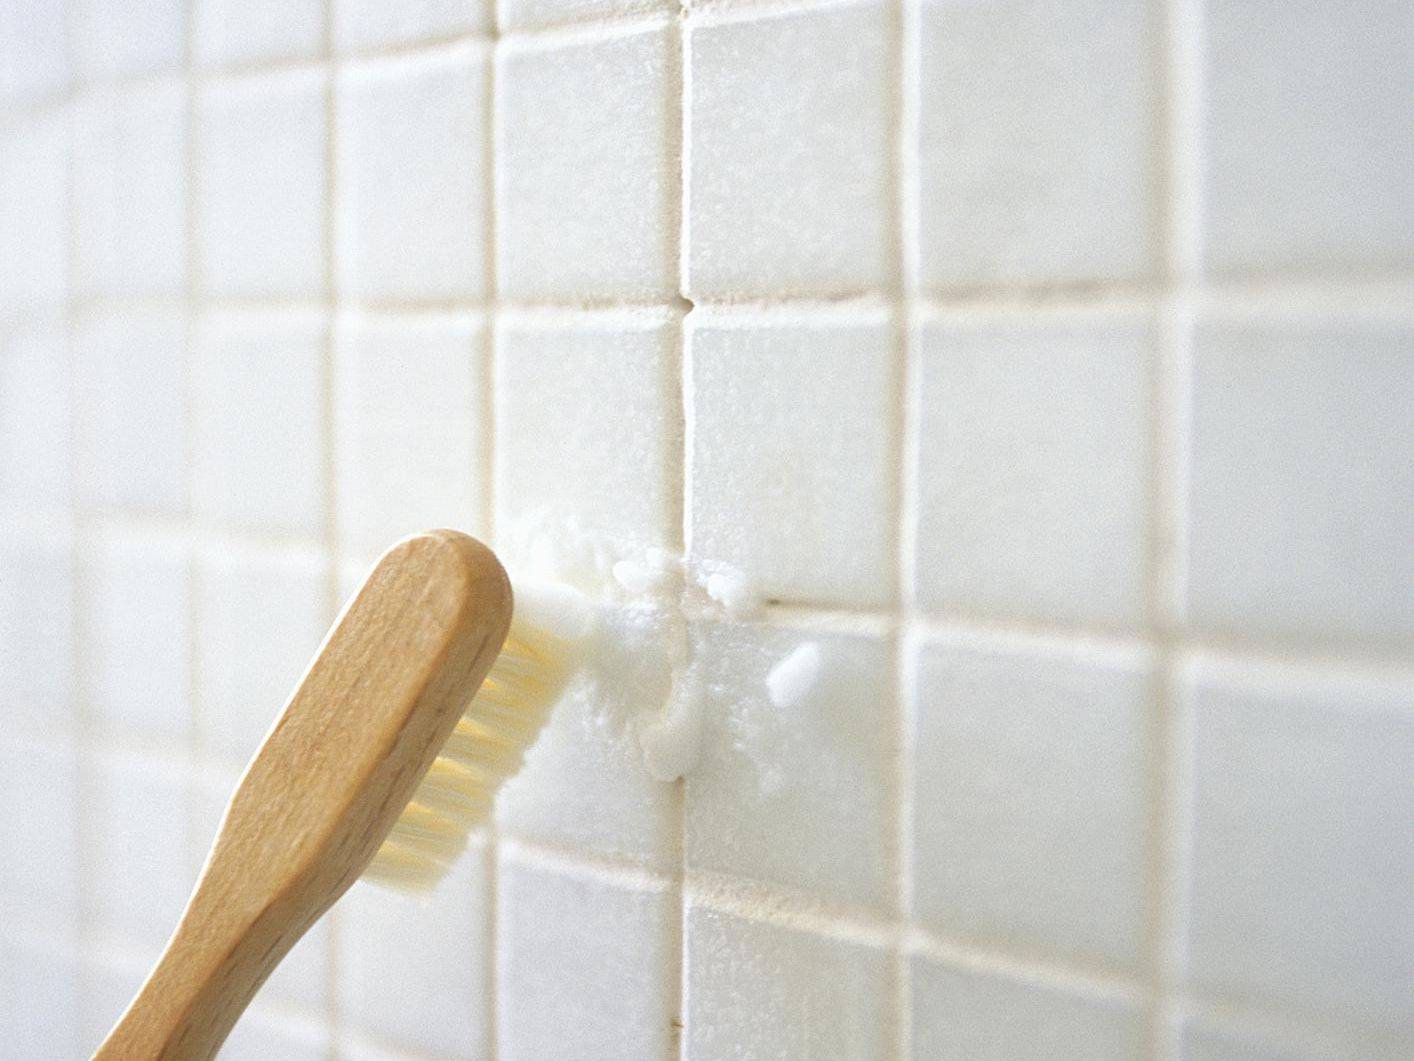 Как очистить плитку в ванной: моющие средства и народные методы для ухода за кафелем